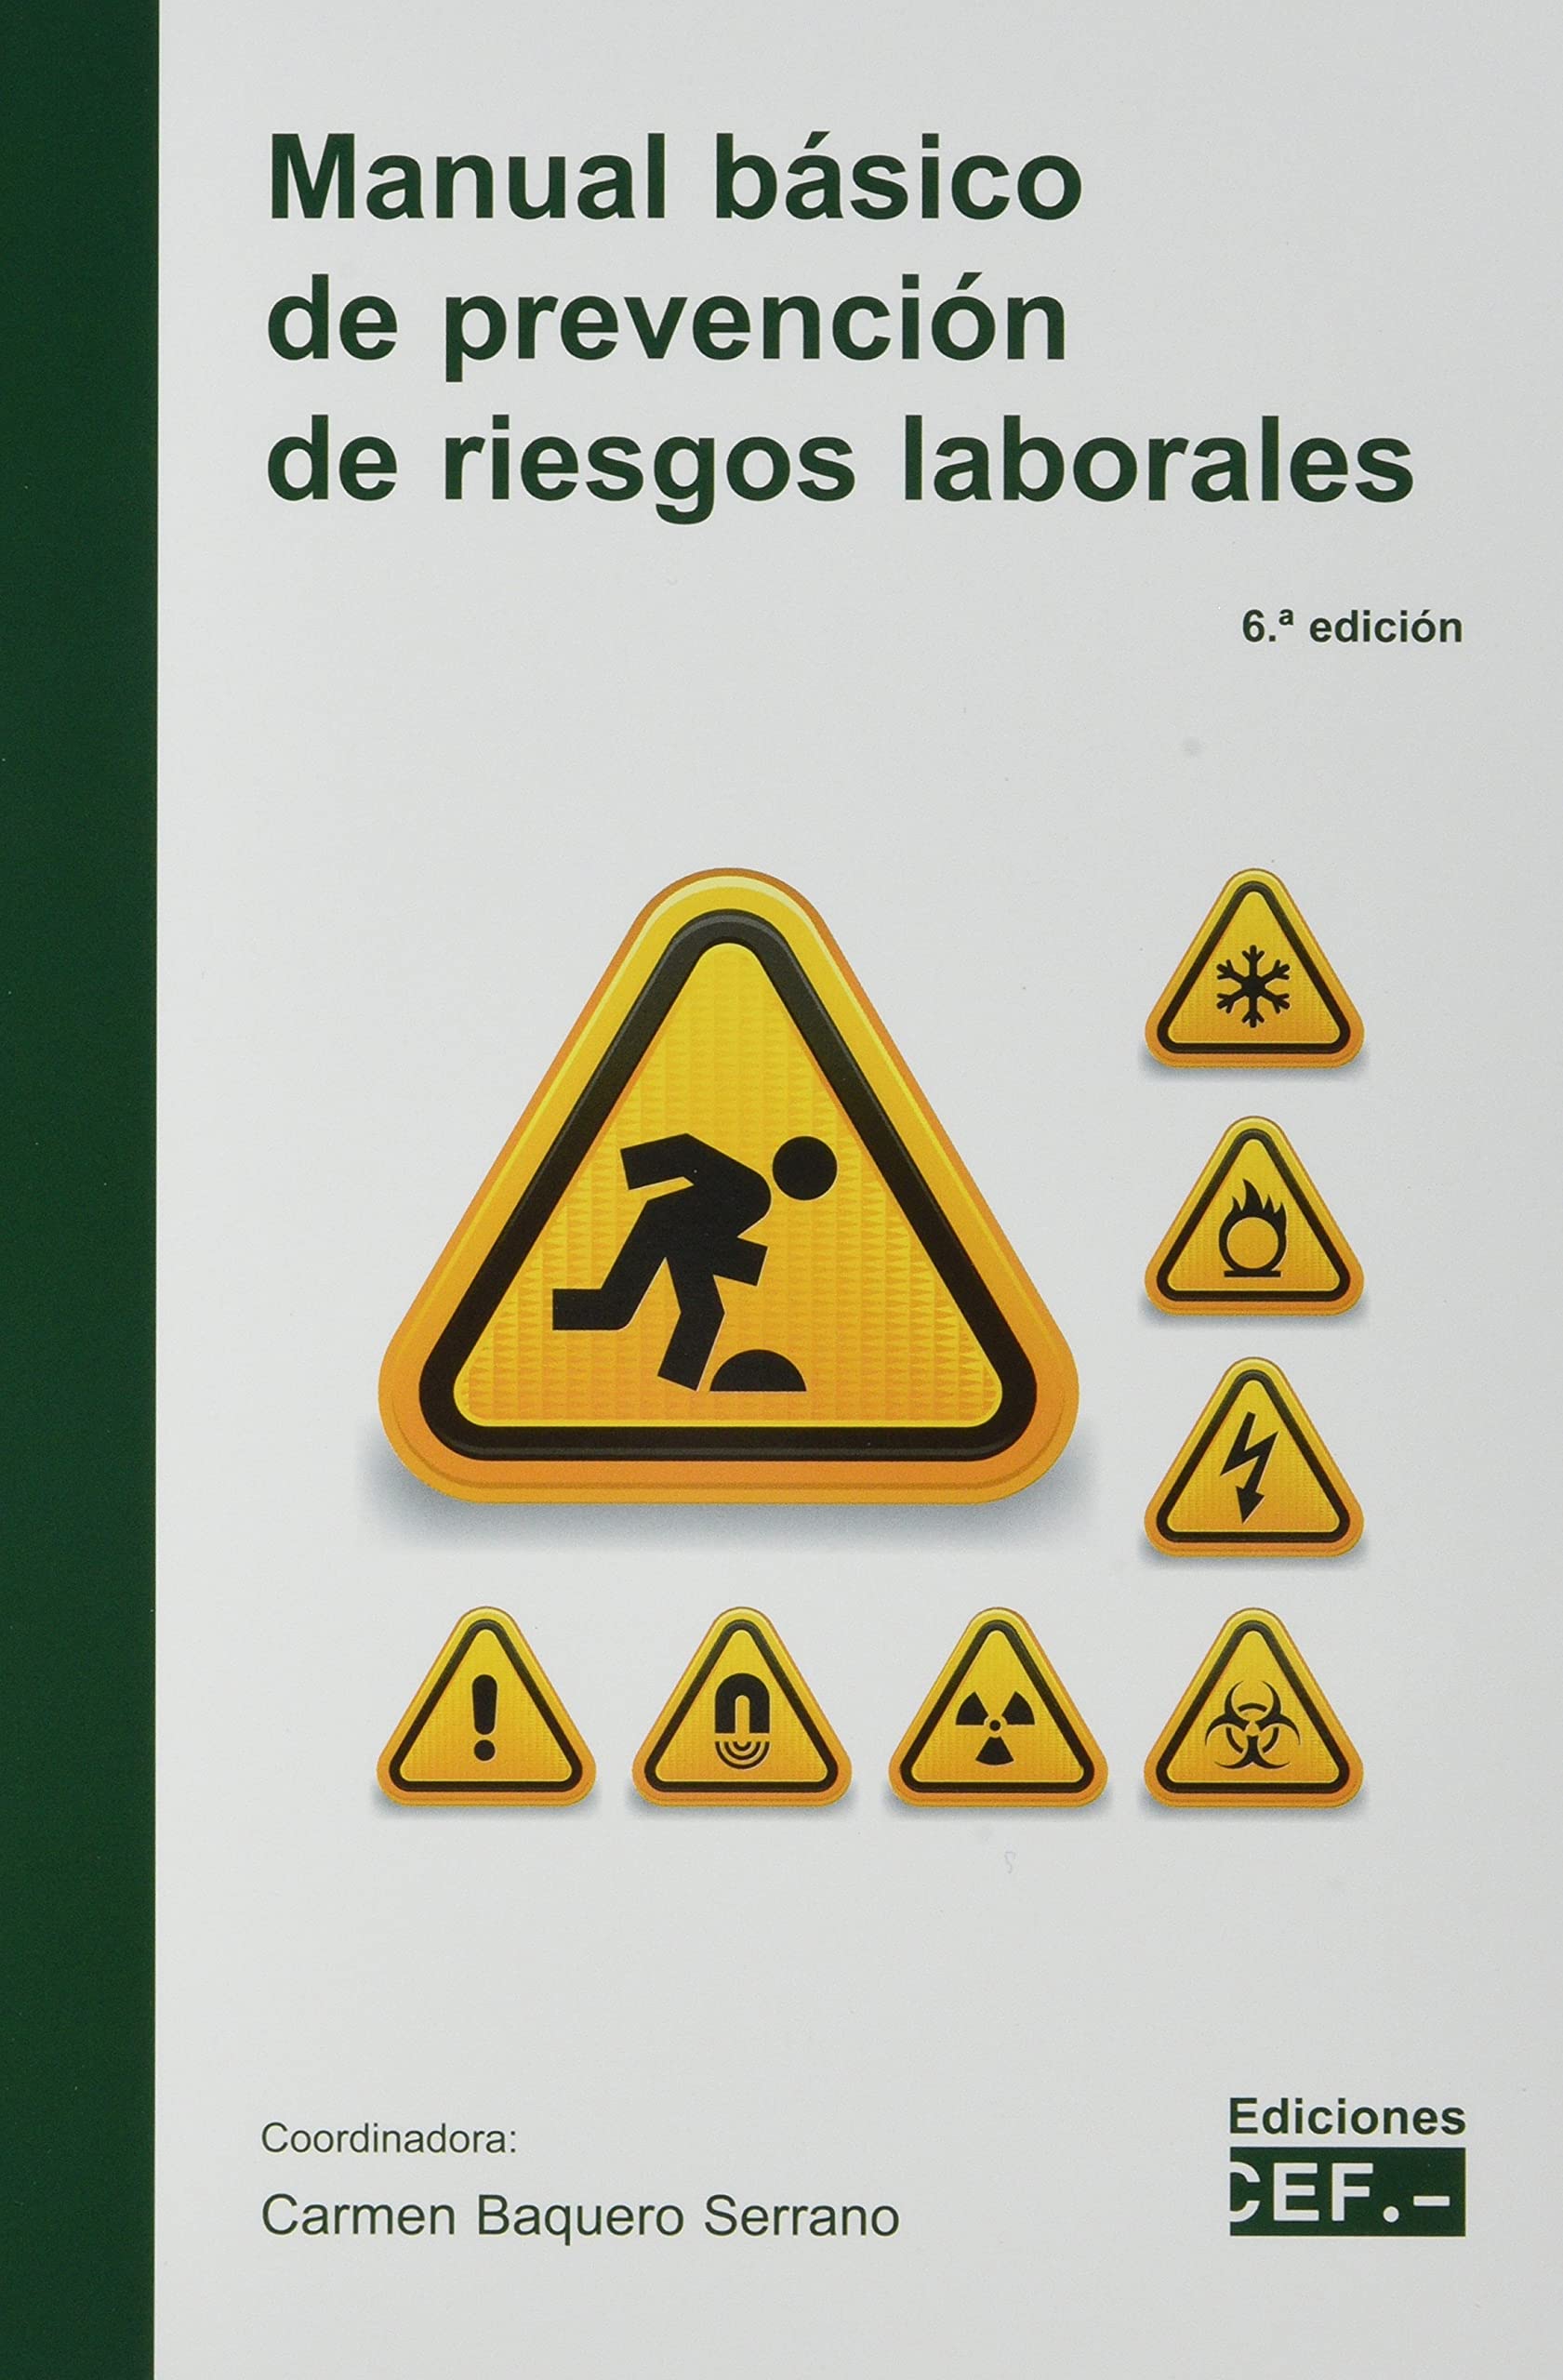 Imagen de portada del libro manual básico de prevención de riesgos laborales